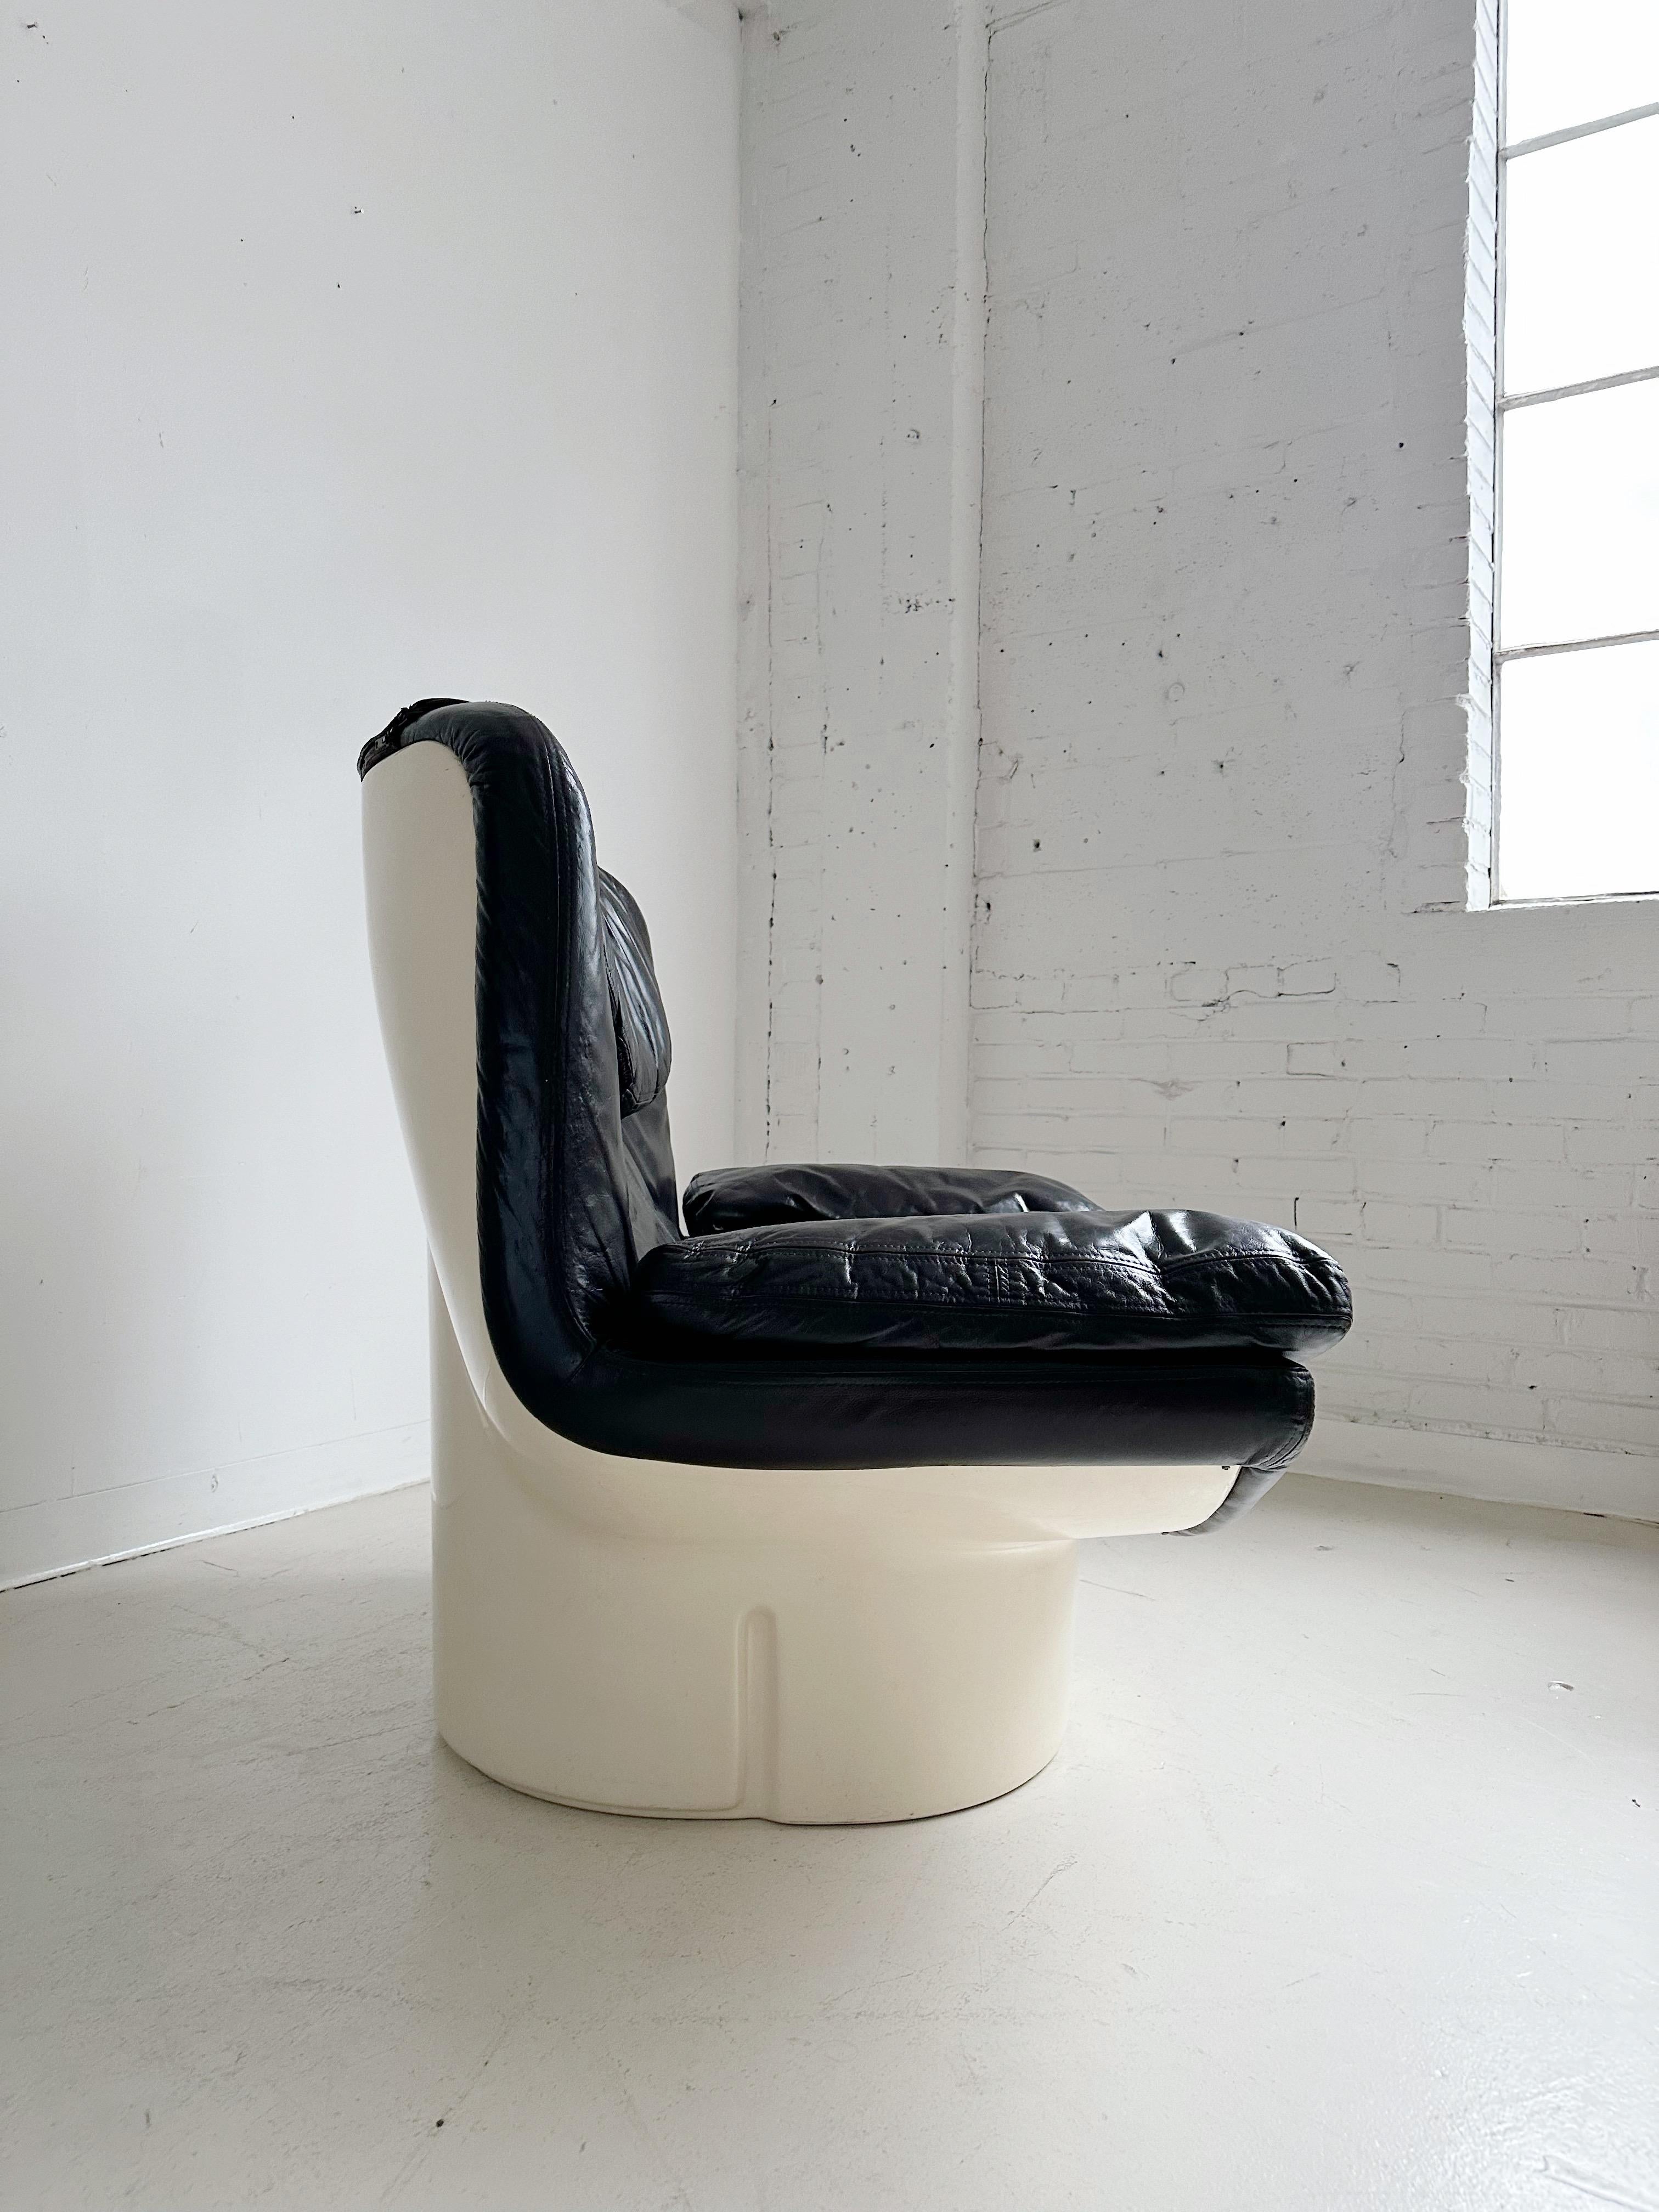 Il Poltrone Lounge Chair von Titiana Ammanati & Giampiero Vitelli für Comfort, 70er Jahre

Mit dunkelbraunen Lederkissen und einem Glasfasersockel

//

Abmessungen:

43 